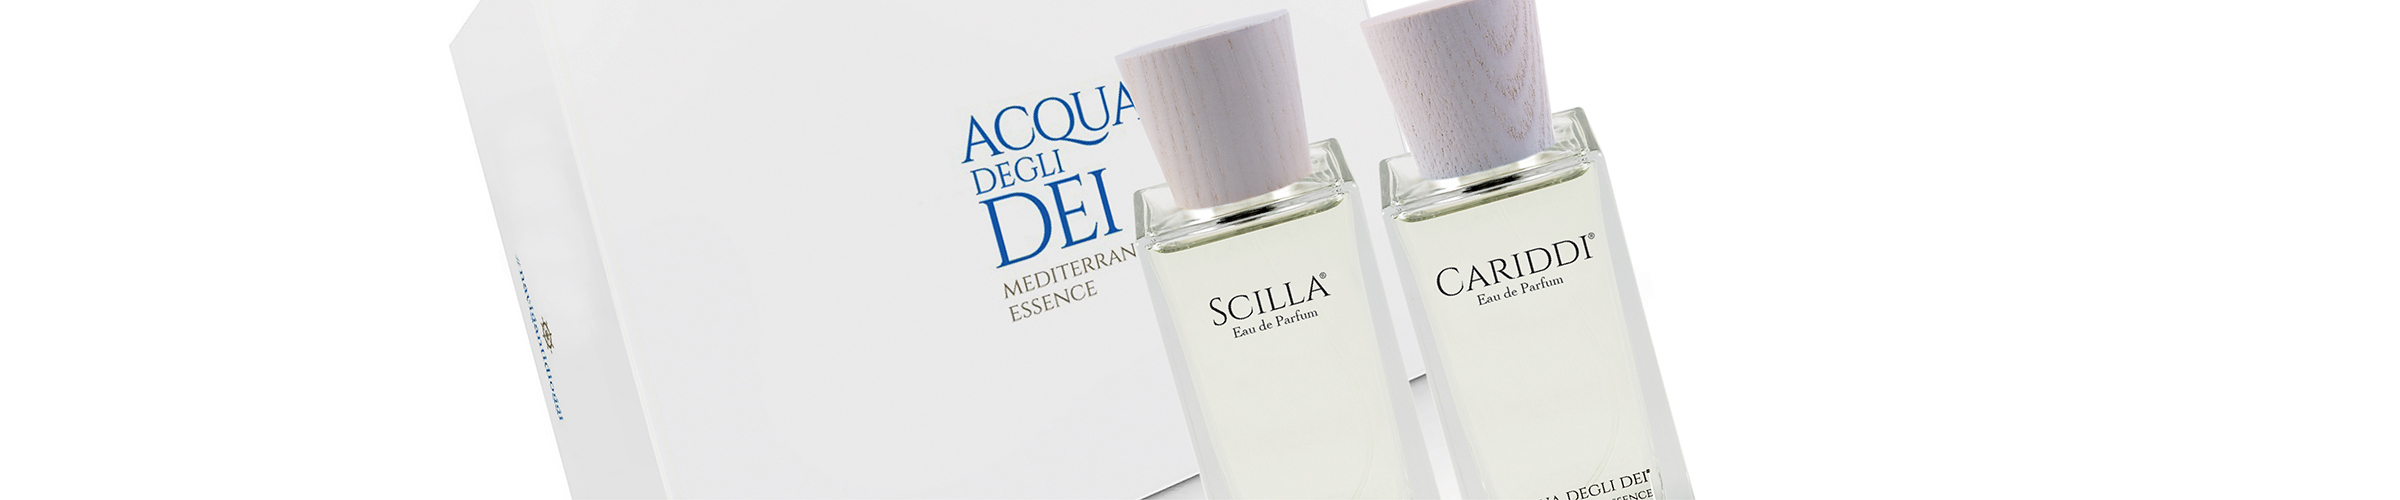 Die beiden Eau de Parfum Scilla und Cariddi im 100 ml Format, aufbewahrt in der edlen Geschenkbox